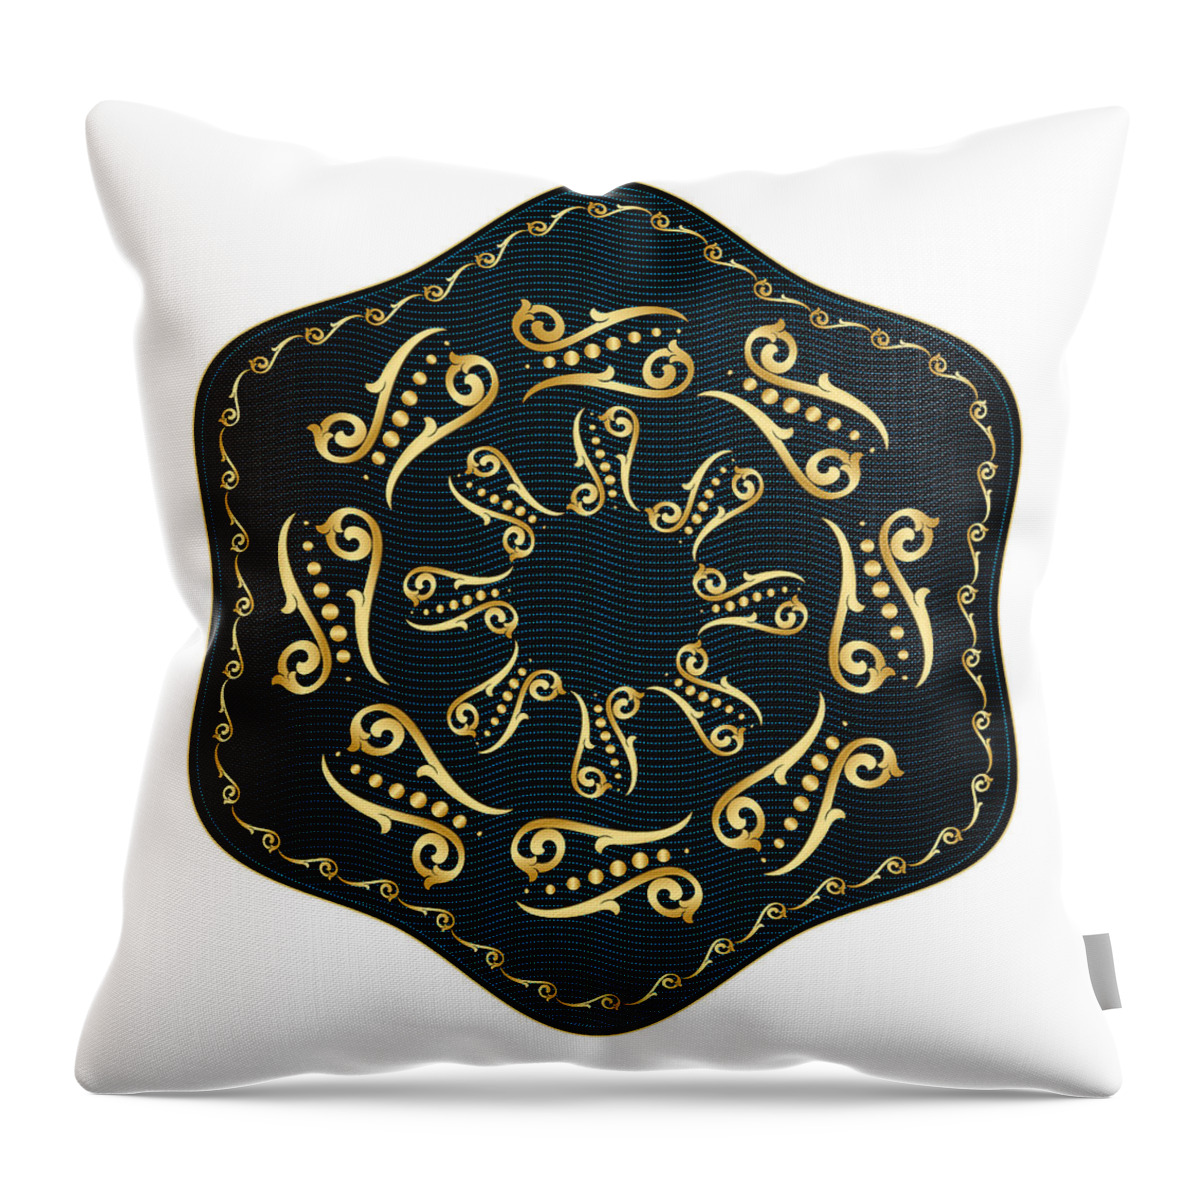 Mandala Throw Pillow featuring the digital art Circularium No. 2560 by Alan Bennington